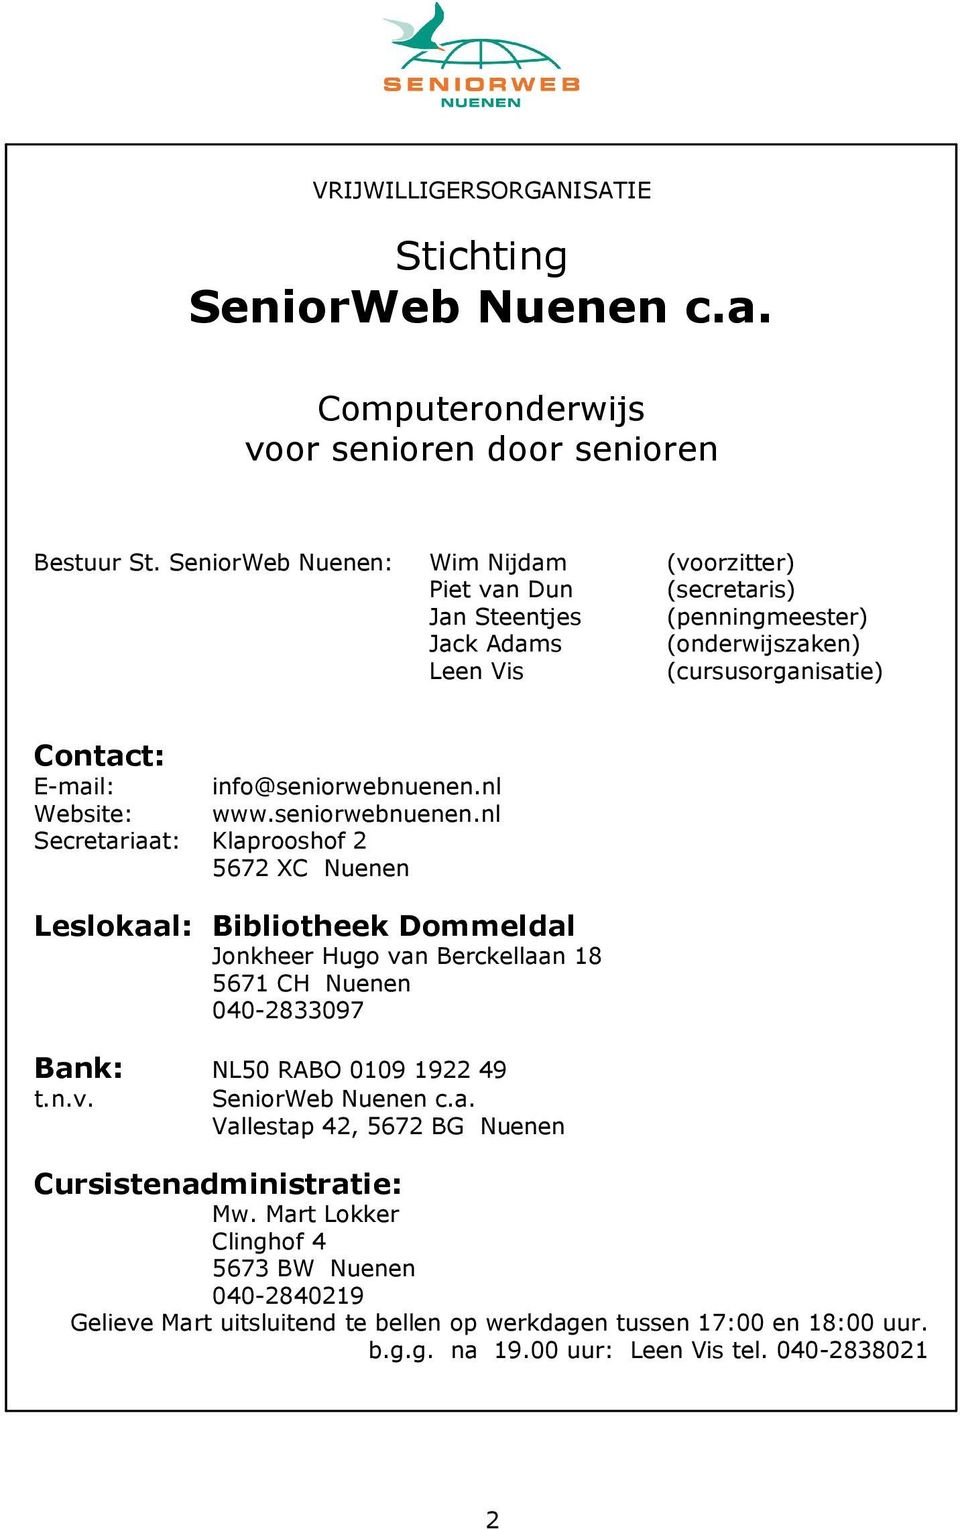 info@seniorwebnuenen.nl Website: www.seniorwebnuenen.nl Secretariaat: Klaprooshof 2 5672 XC Nuenen Leslokaal: Bibliotheek Dommeldal Jonkheer Hugo van Berckellaan 18 5671 CH Nuenen 040-2833097 Bank: NL50 RABO 0109 1922 49 t.